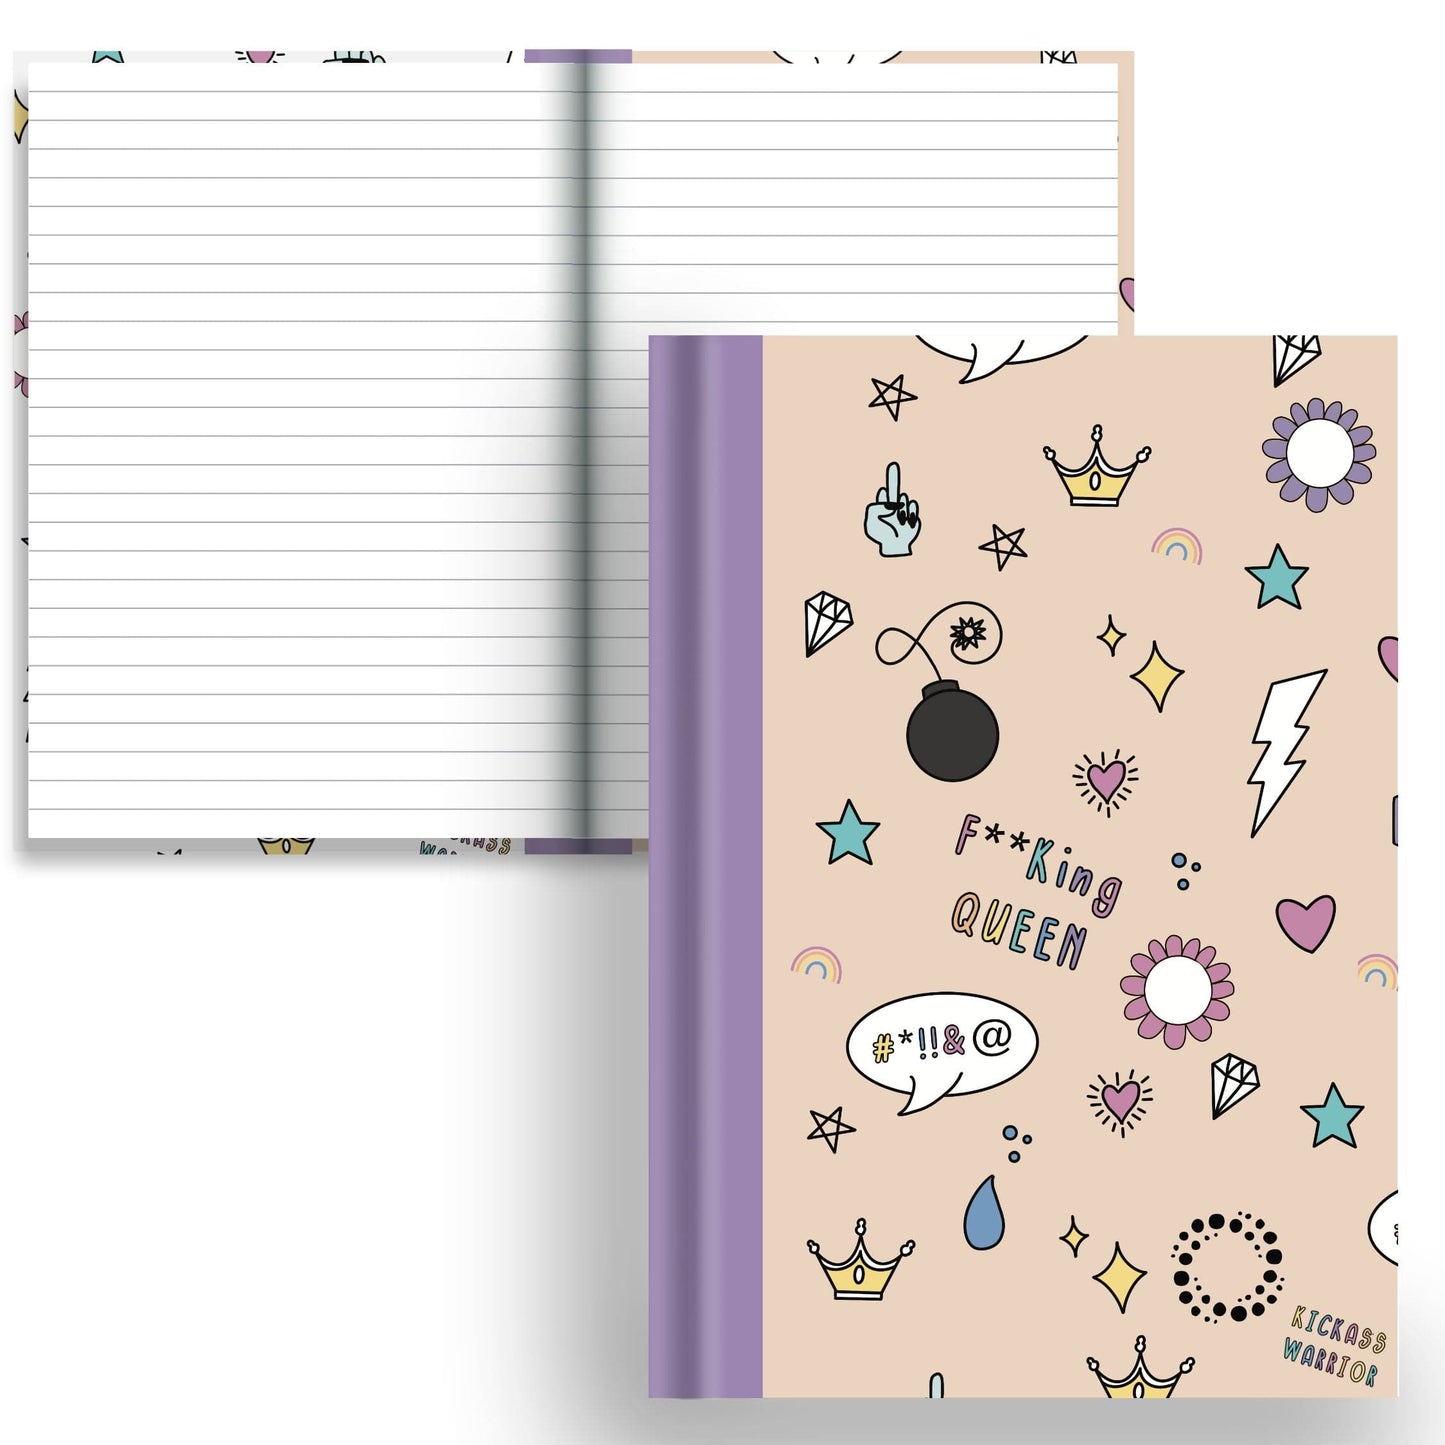 DayDot Journals A5 Notebook Lined Paper Inner Fire — Prude - A5 Hardback Notebook